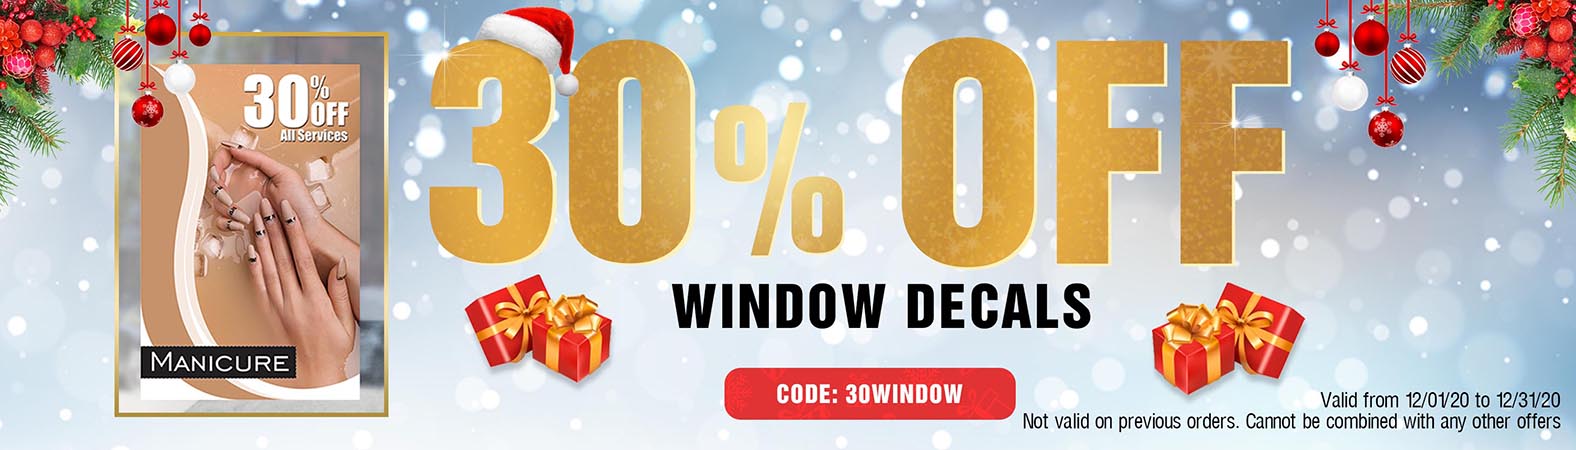 30% OFF Window Decals